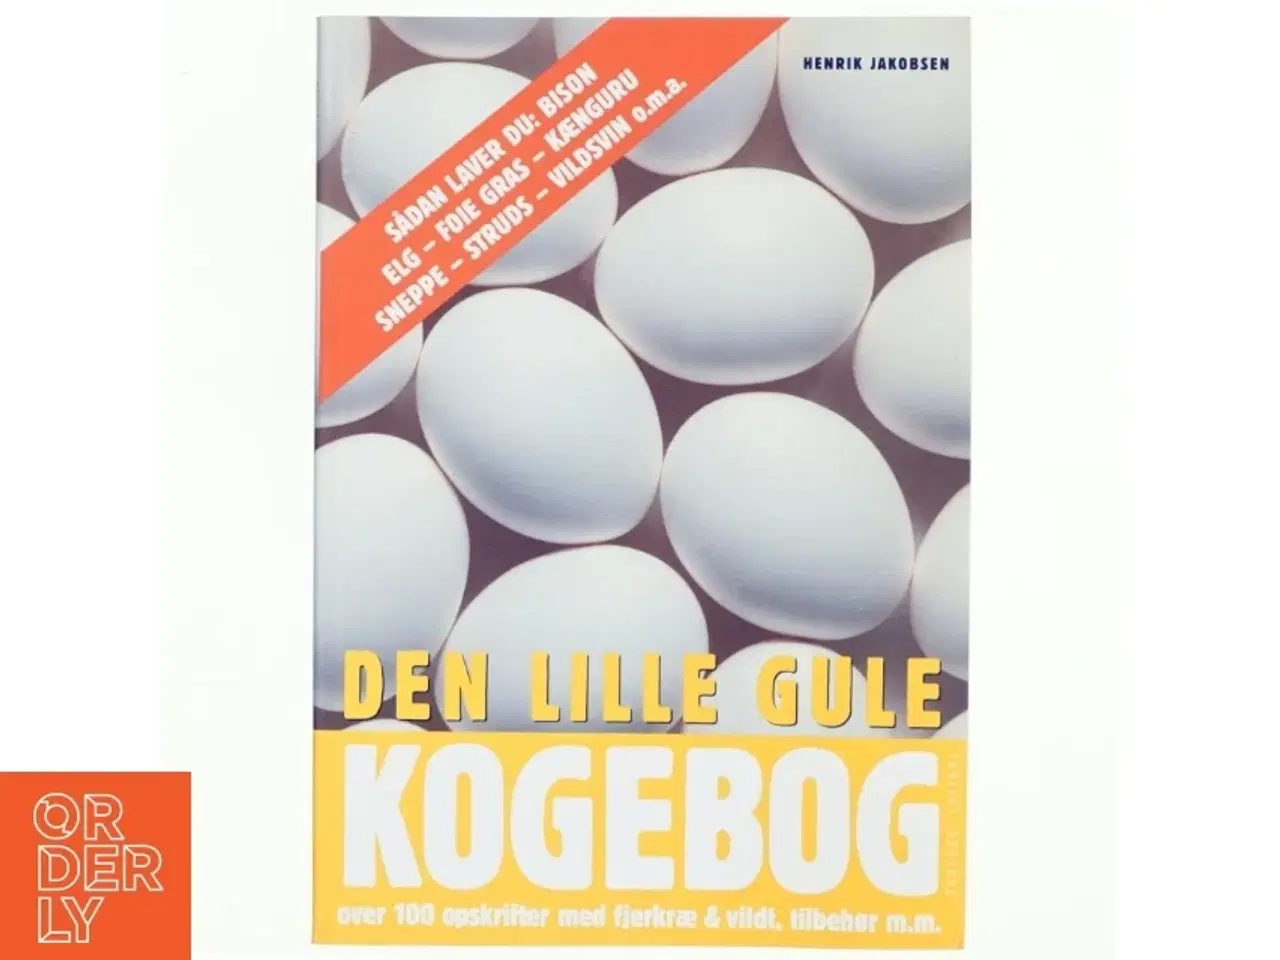 Billede 1 - Den lille gule kogebog : over 100 opskrifter med fjerkræ & vildt, tilbehør m.m. af Henrik Jakobsen (f. 1949-07-04) (Bog)